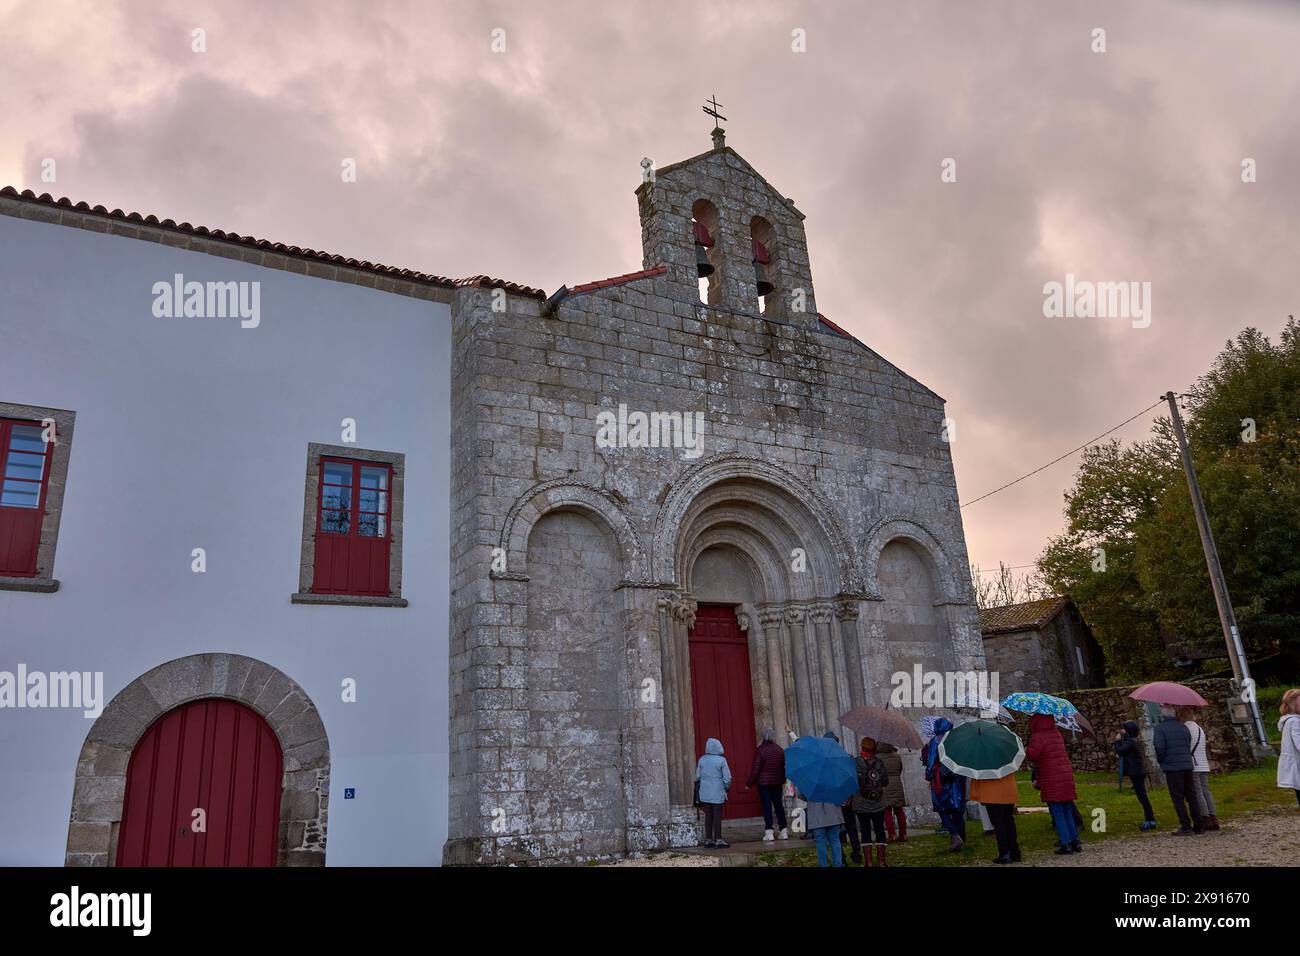 Mit Sonnenschirmen besichtigen Sie eine historische Steinkirche mit roten Türen unter einem bewölkten Himmel, die kulturelle Interessen und Kulturerbe widerspiegelt Stockfoto